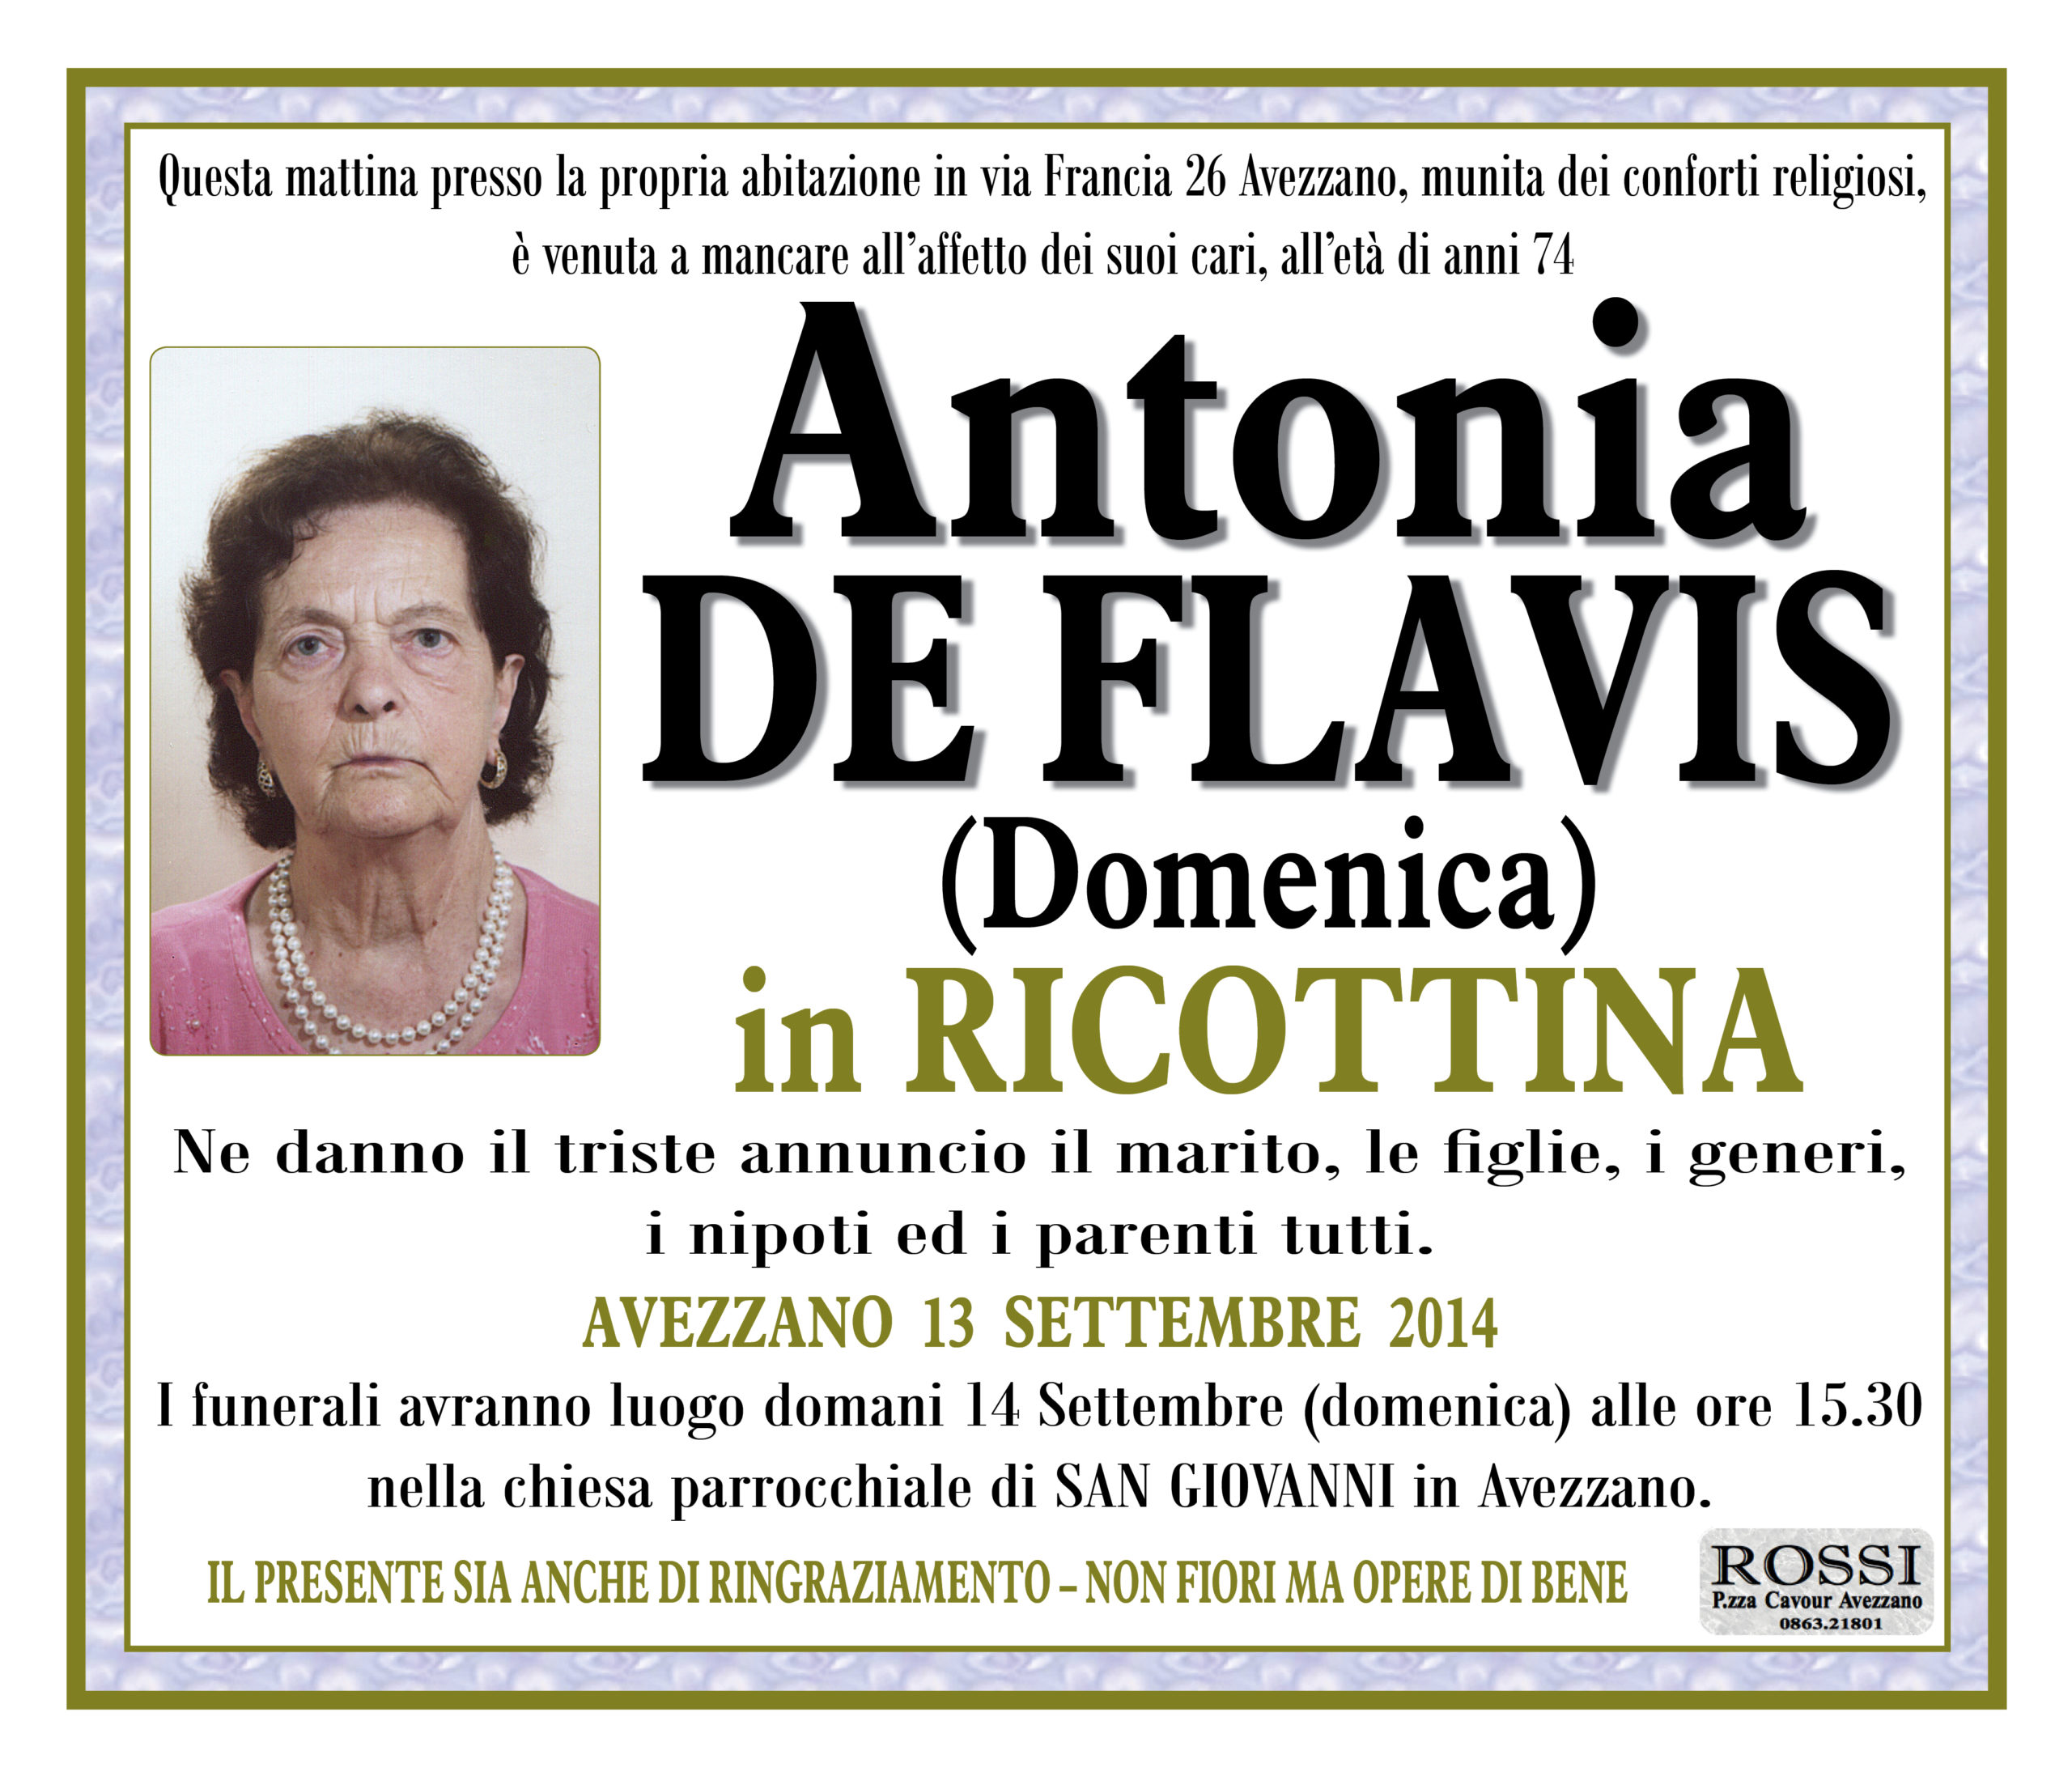 Antonia De Flavis